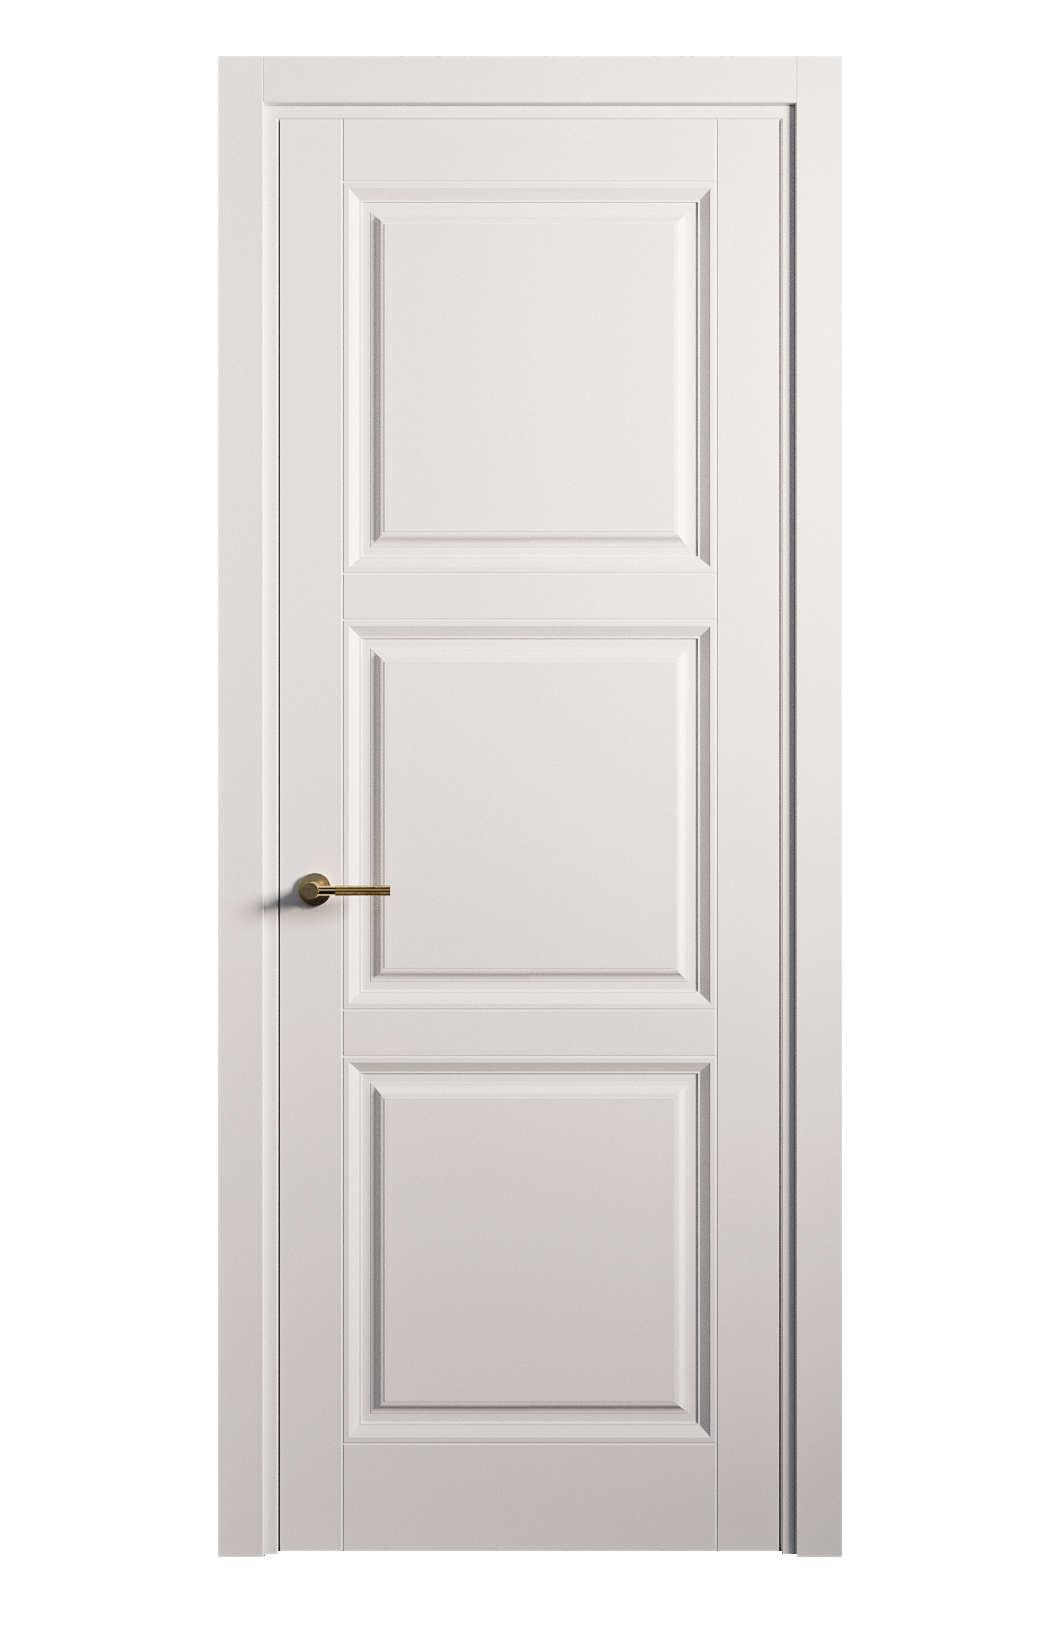 Межкомнатная дверь Venezia-3 глухая эмаль ral 9003 25778